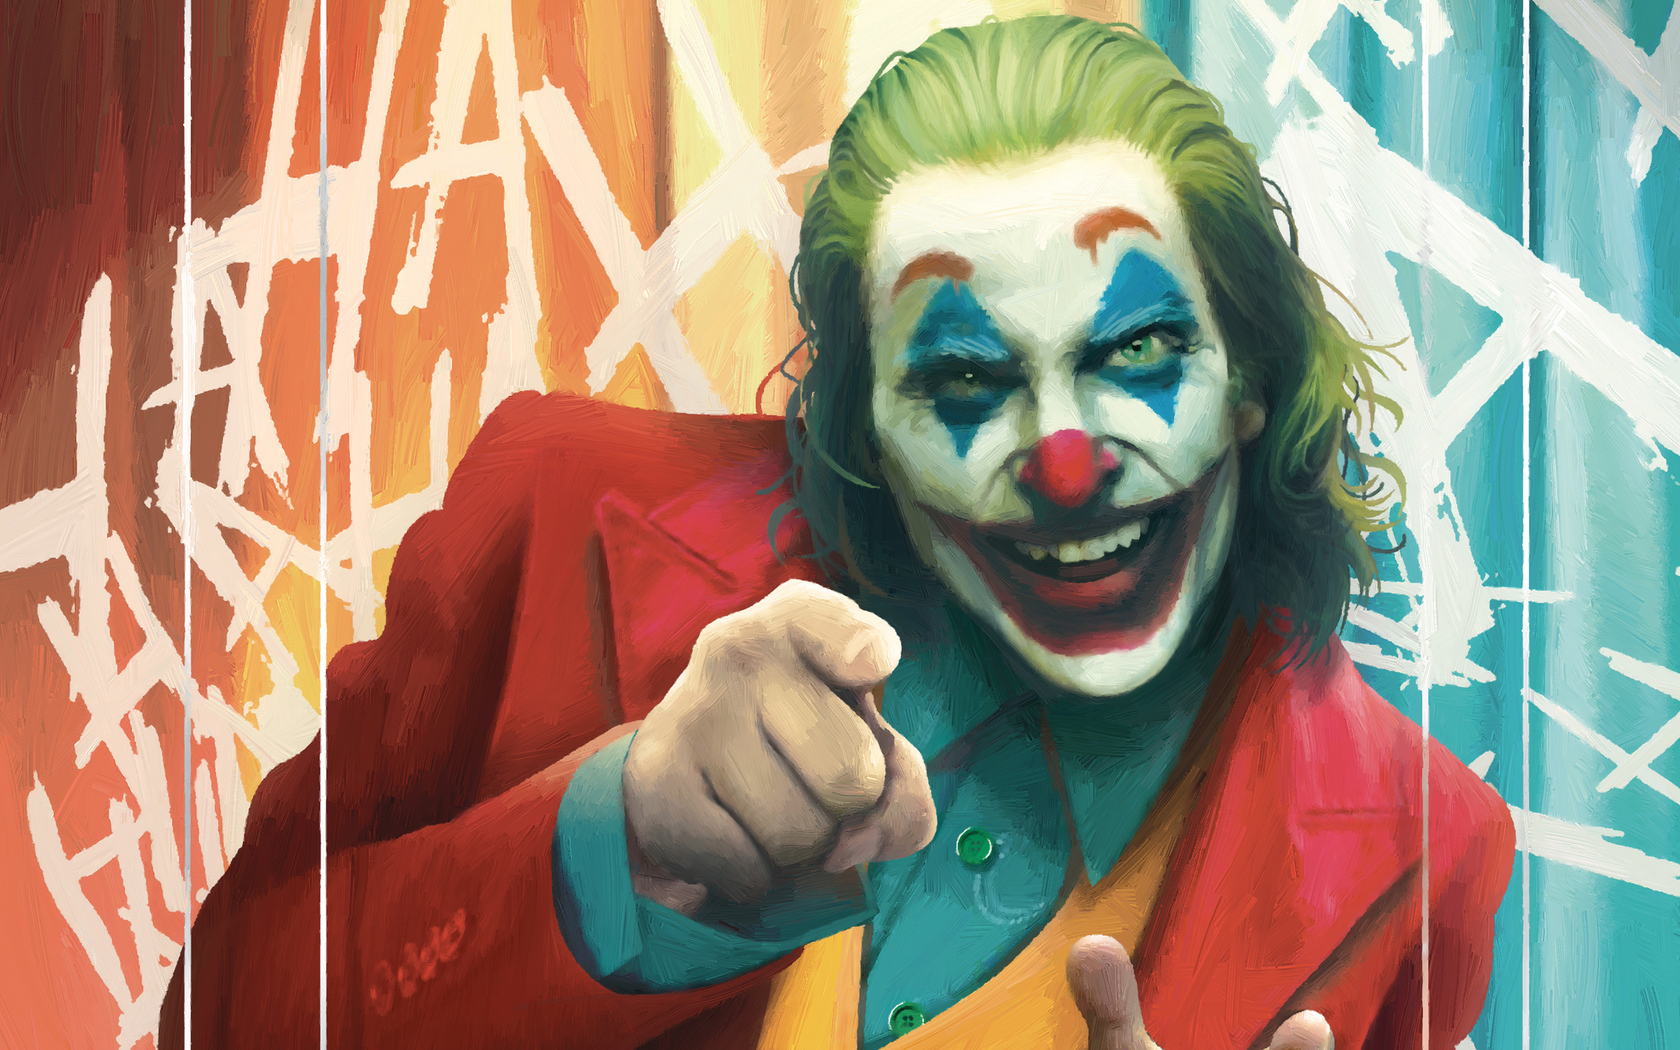 1680x1050 Joker Jokes On You 1680x1050 Resolution HD 4k Wallpapers ...